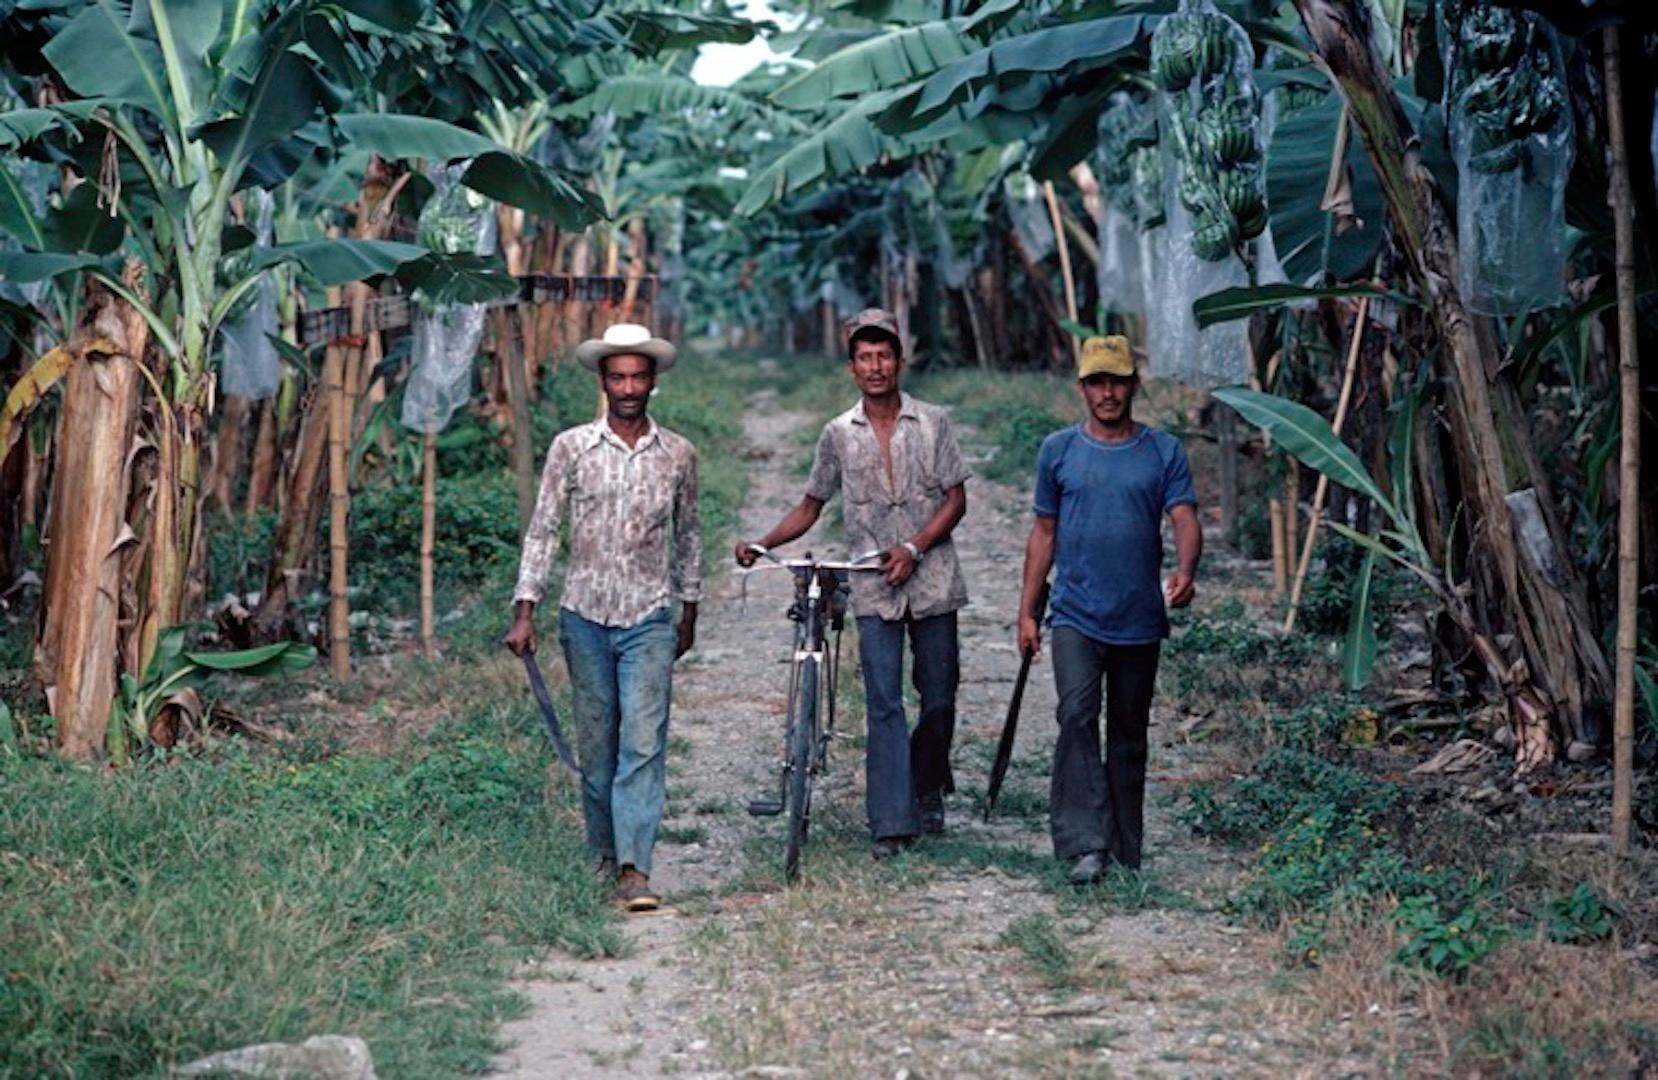 Alain Le Garsmeur Figurative Photograph - 'Banana Plantation' 1981 Limited Edition Archival Pigment Print 